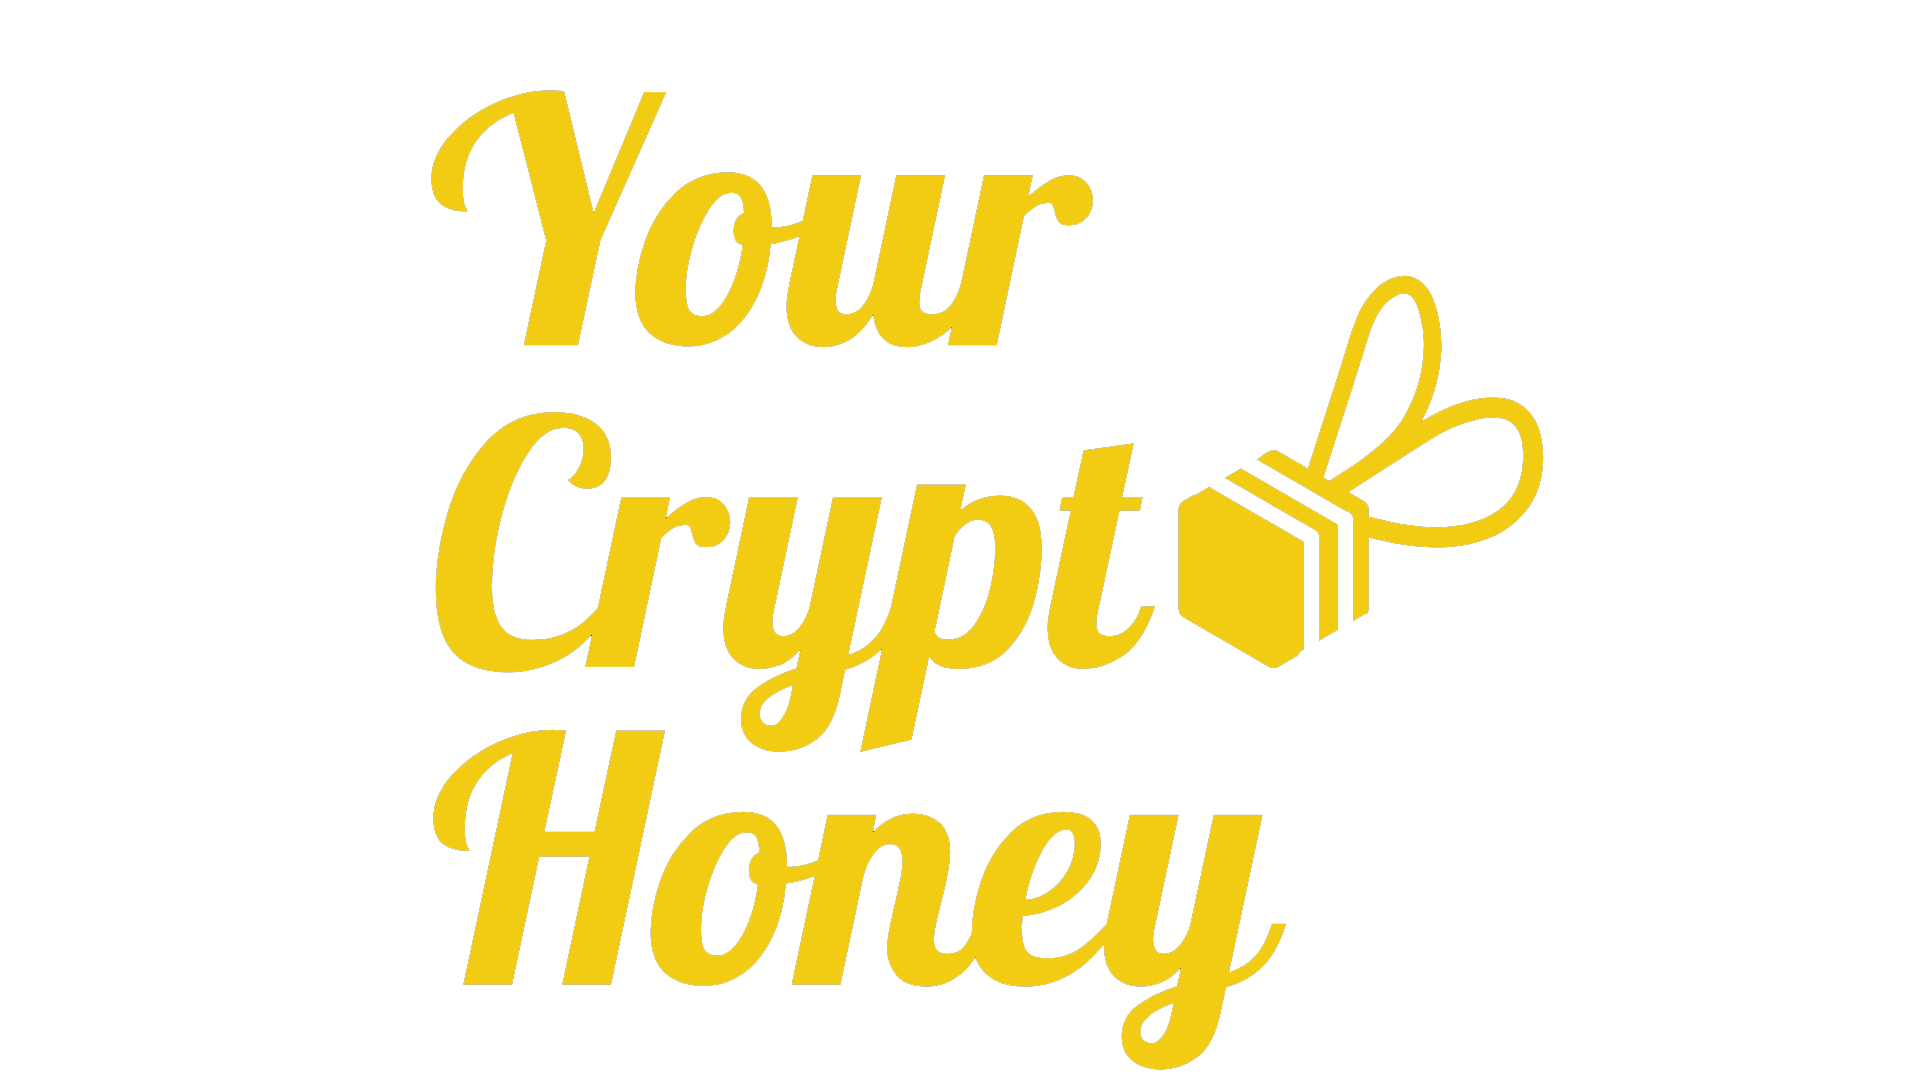 YourCryptoHoney_YellowLogo.png